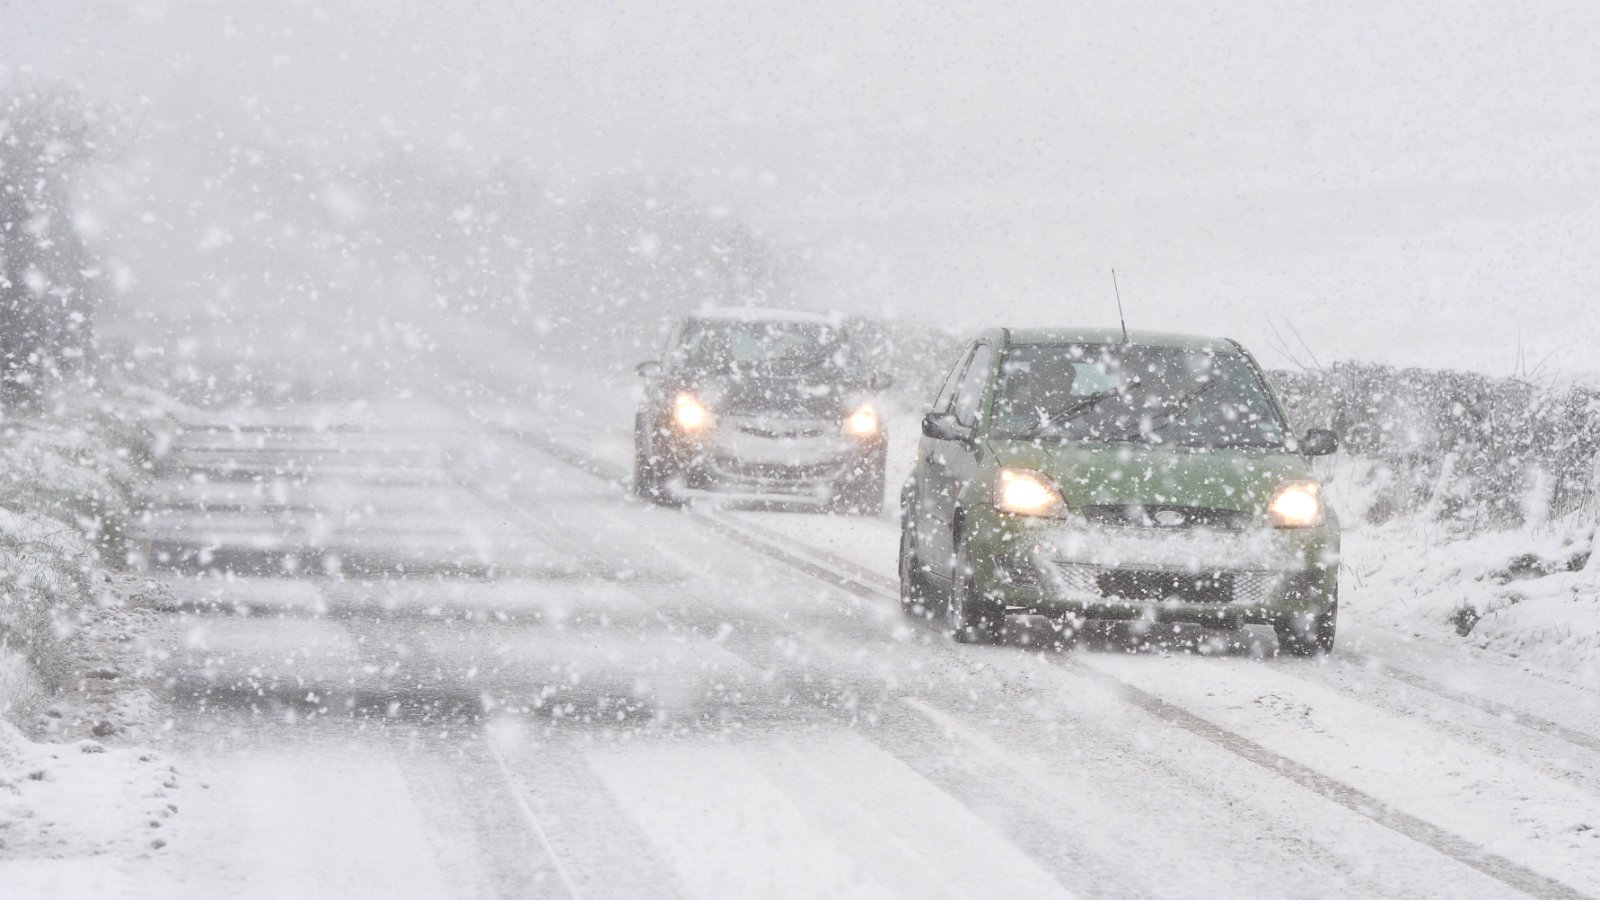  Επερχόμενος χιονιάς: Τι πρέπει να ελέγχουμε συχνότερα τον χειμώνα στο αμάξι